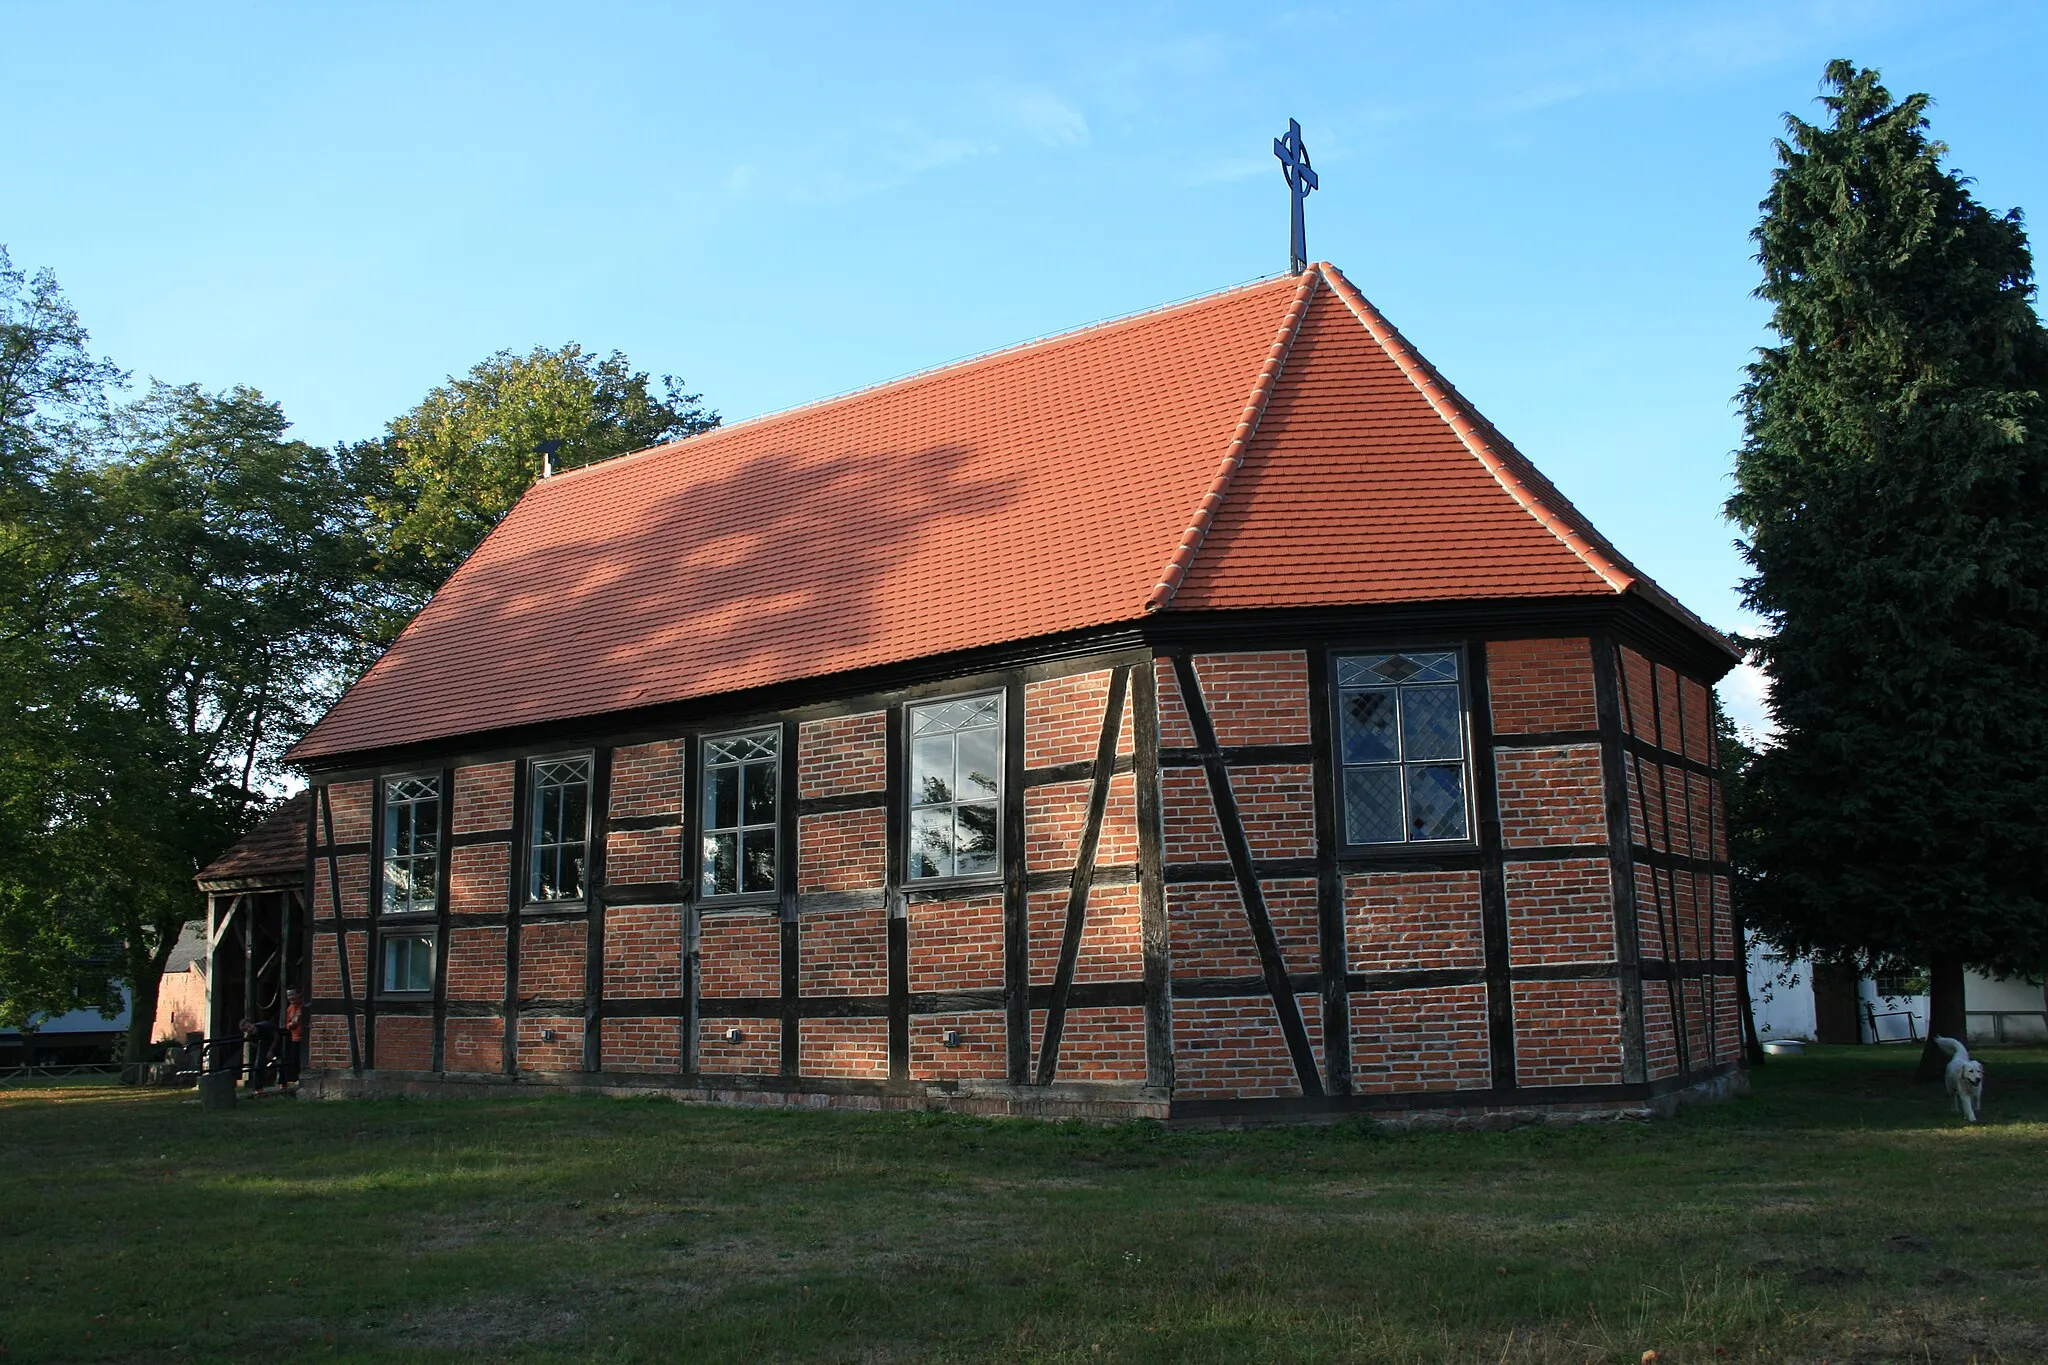 Photo showing: Die evangelische Kirche stammt aus der 18. Jahrhundert. Der Glockenstuhl ist freistehend.
Die Kirche ist ein Fachwerkgebäude, ausgefacht mit roten Backsteinen.